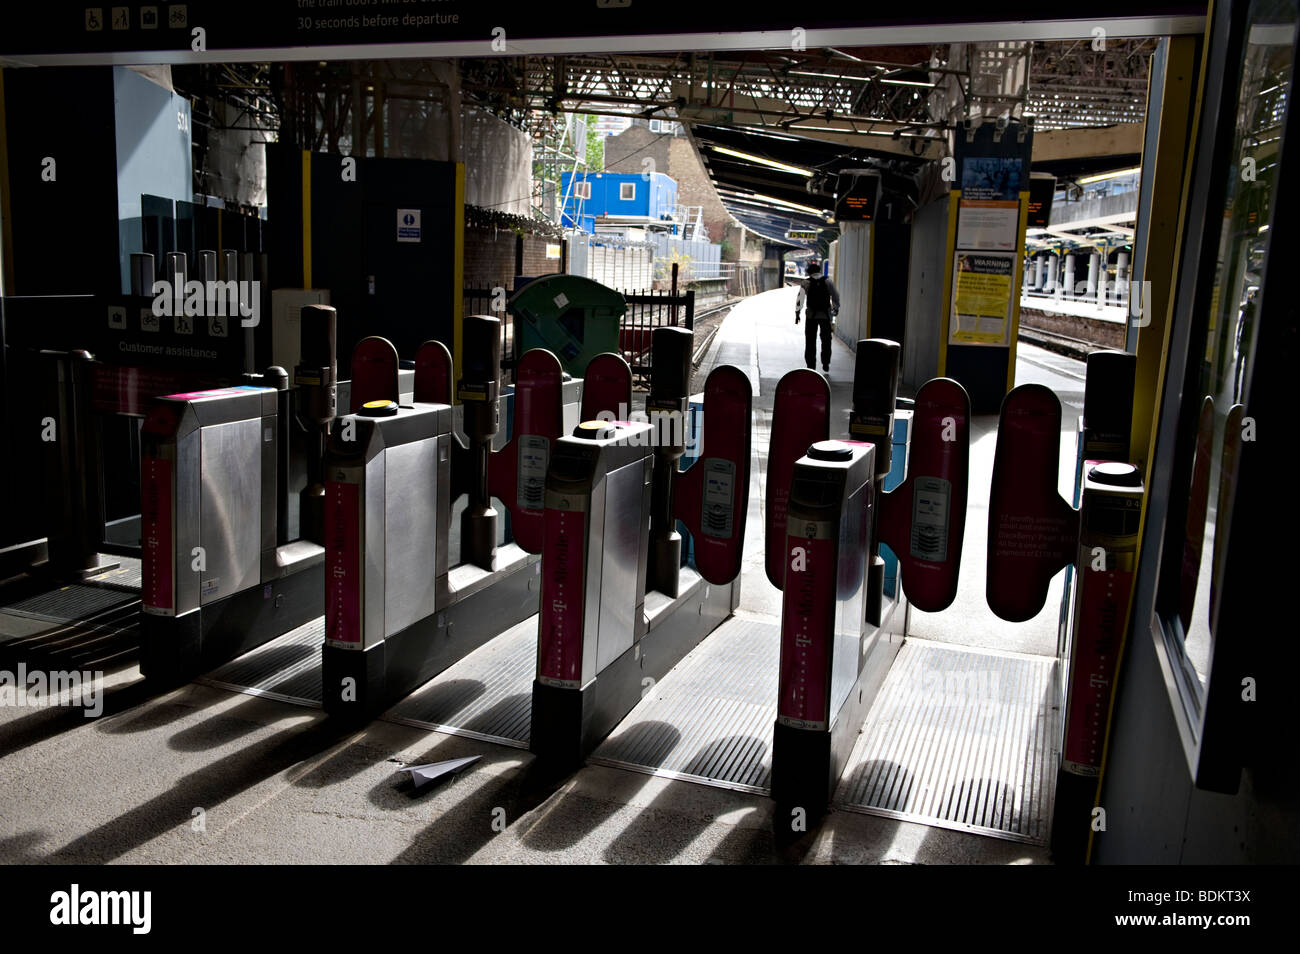 Barriere di biglietteria presso la stazione ferroviaria di Victoria, Londra, Regno Unito. Foto Stock